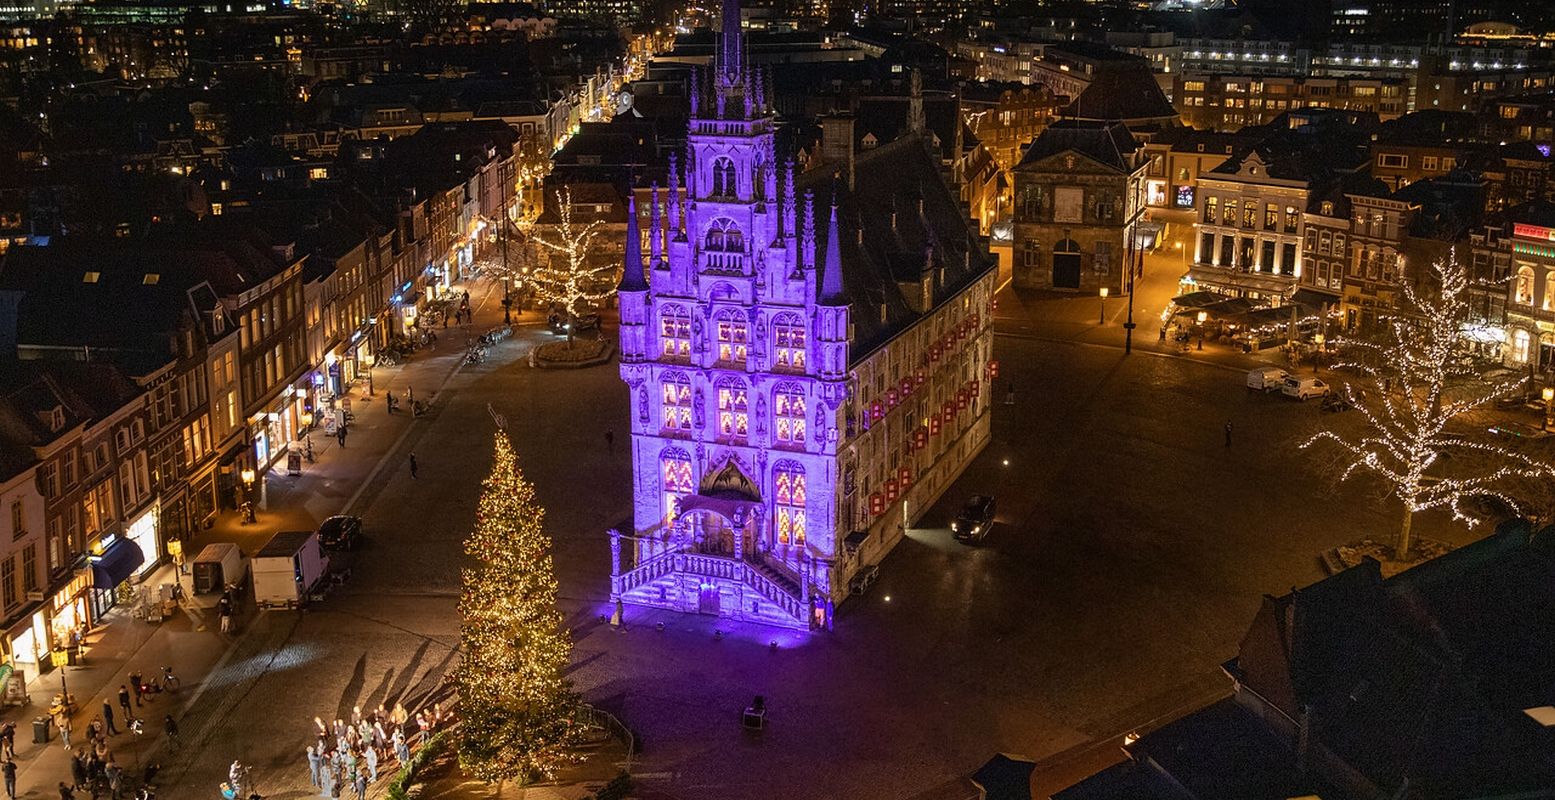 De enorme kerstboom voor het door kaarsjes verlichte stadhuis van Gouda. Reken dit jaar weer op een vol plein. Foto: Astrid de Haan